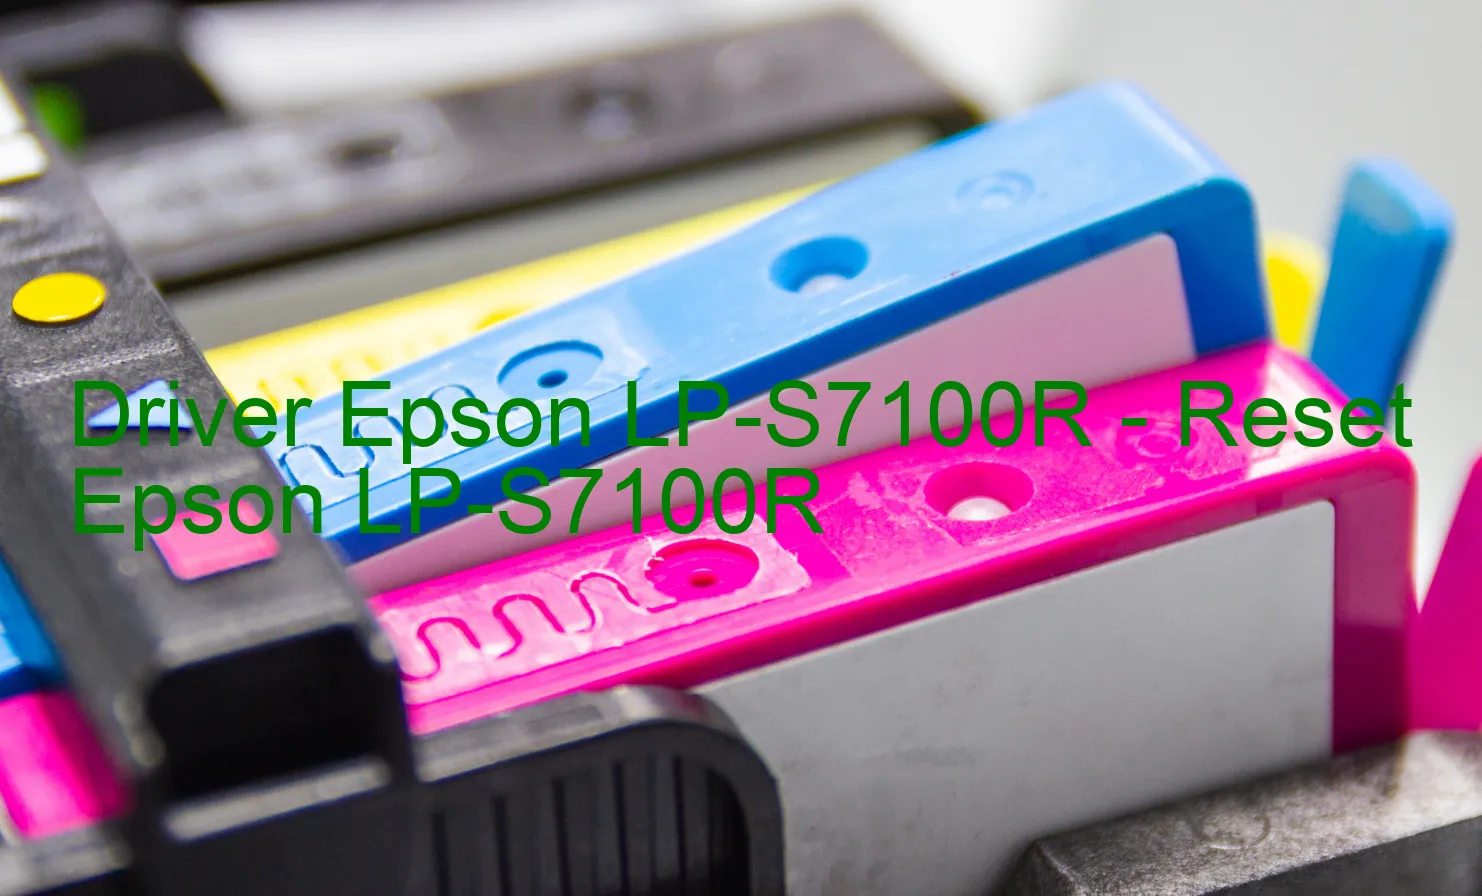 Epson LP-S7100Rのドライバー、Epson LP-S7100Rのリセットソフトウェア